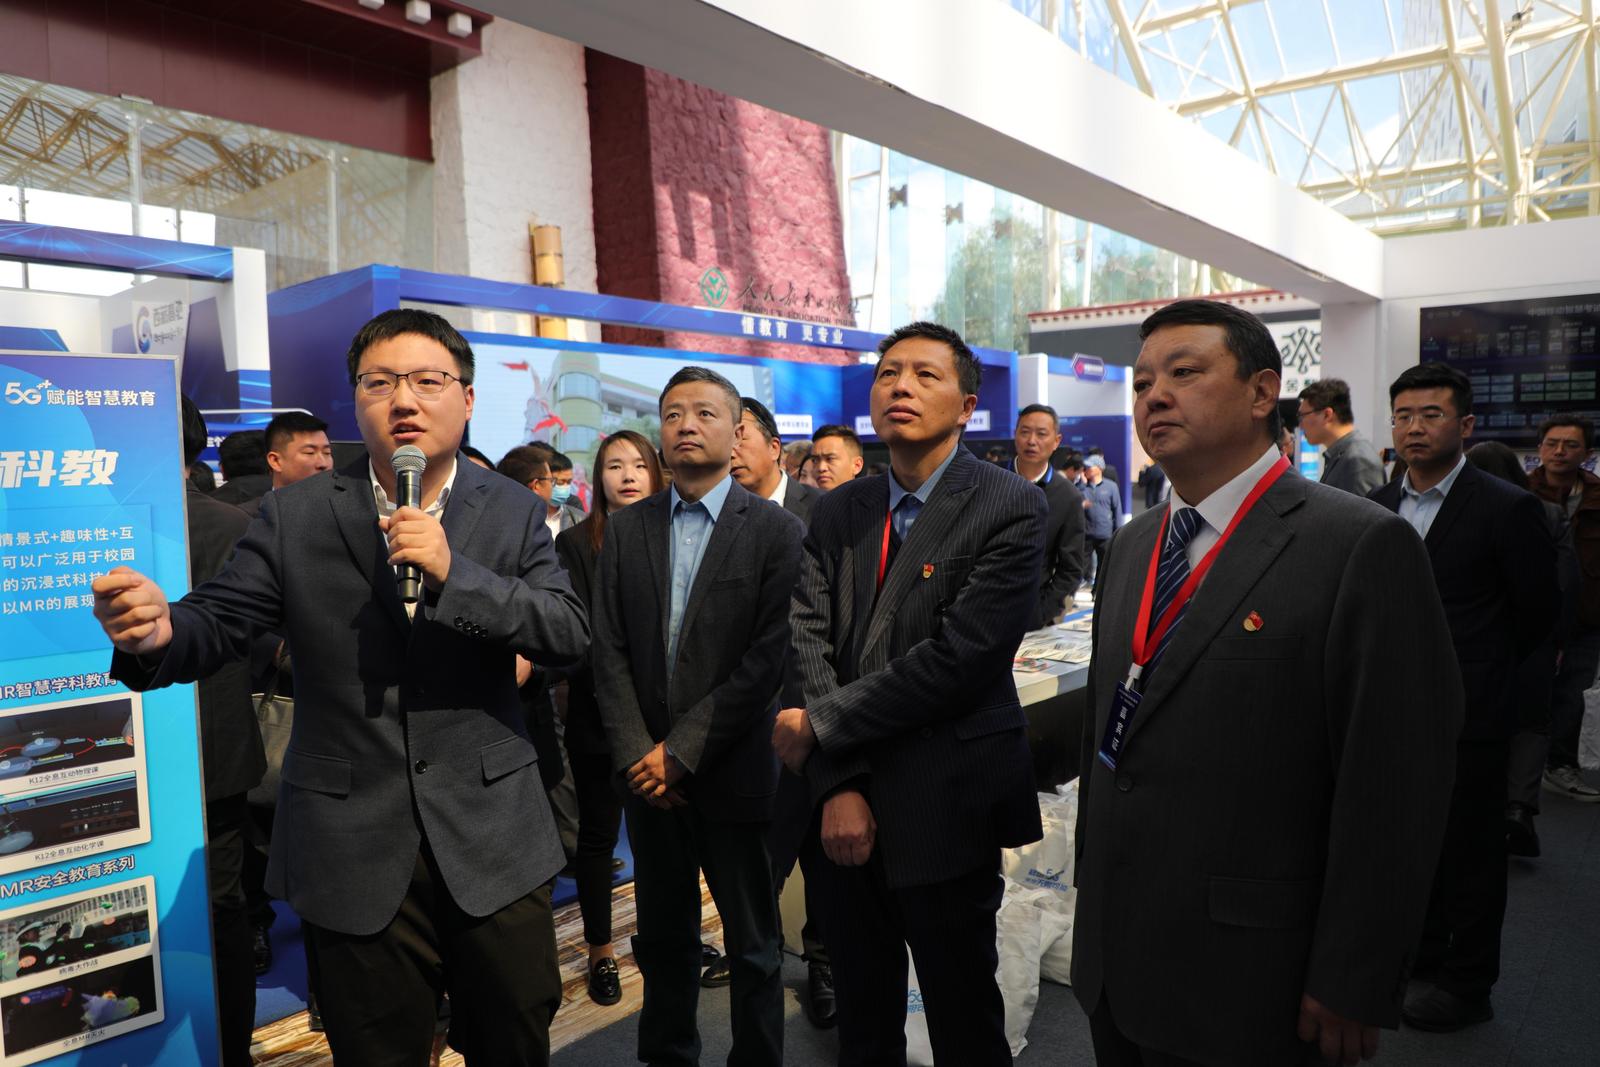 2023年首届西藏自治区数字教育暨“5G+” 行业应用发展大会在拉萨召开